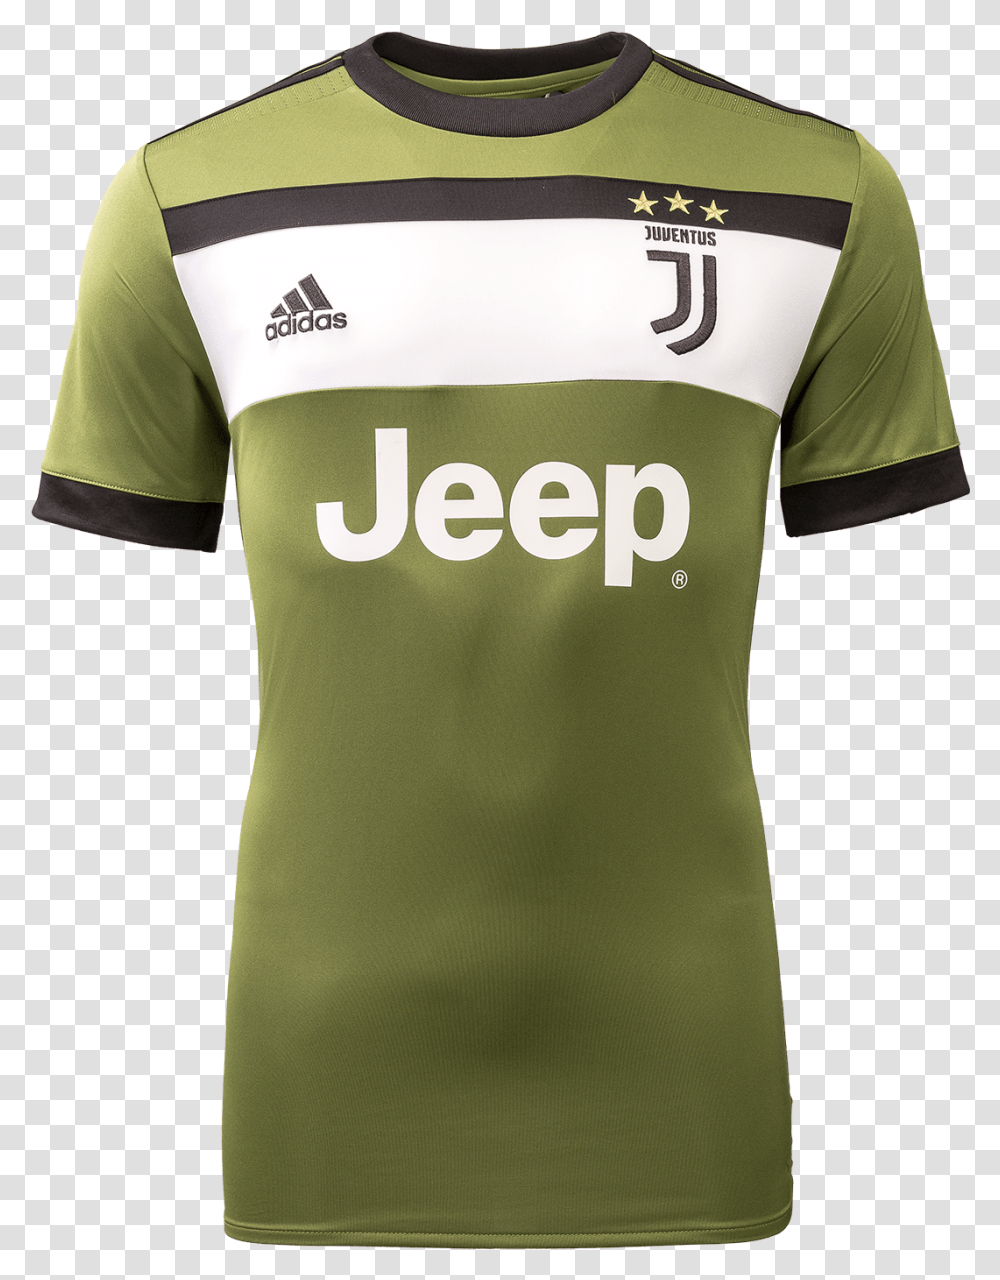 Juventus Third Jersey, Clothing, Apparel, Shirt, T-Shirt Transparent Png